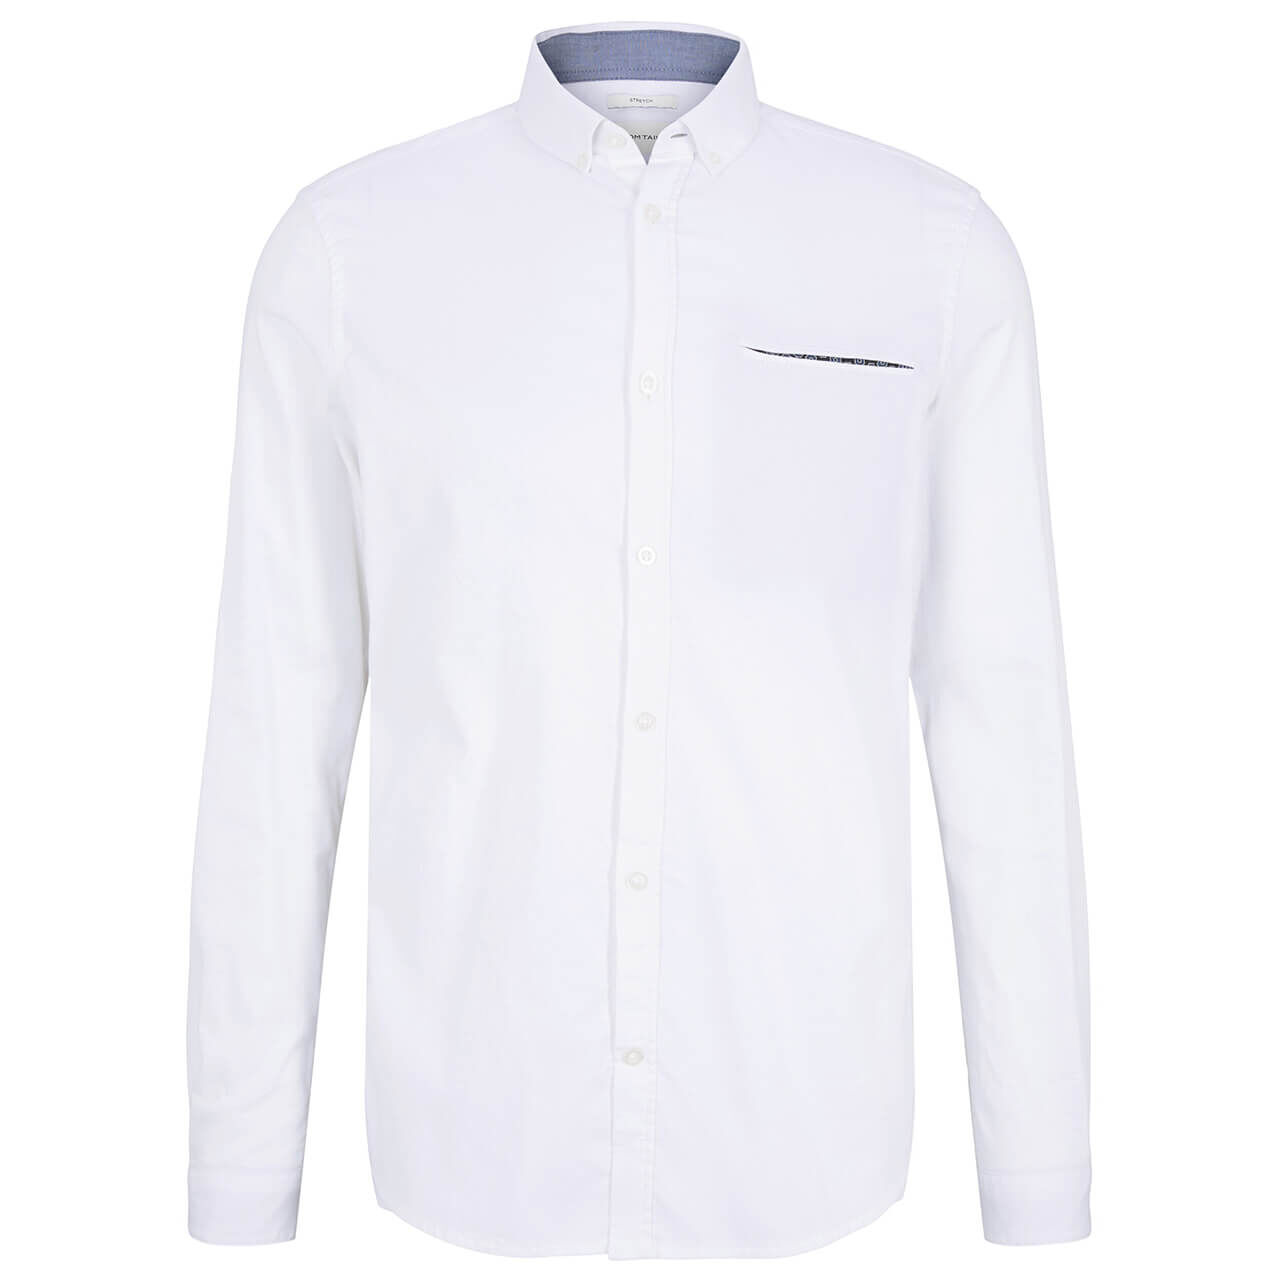 Tom Tailor Hemd für Herren in Weiß, FarbNr.: 20000